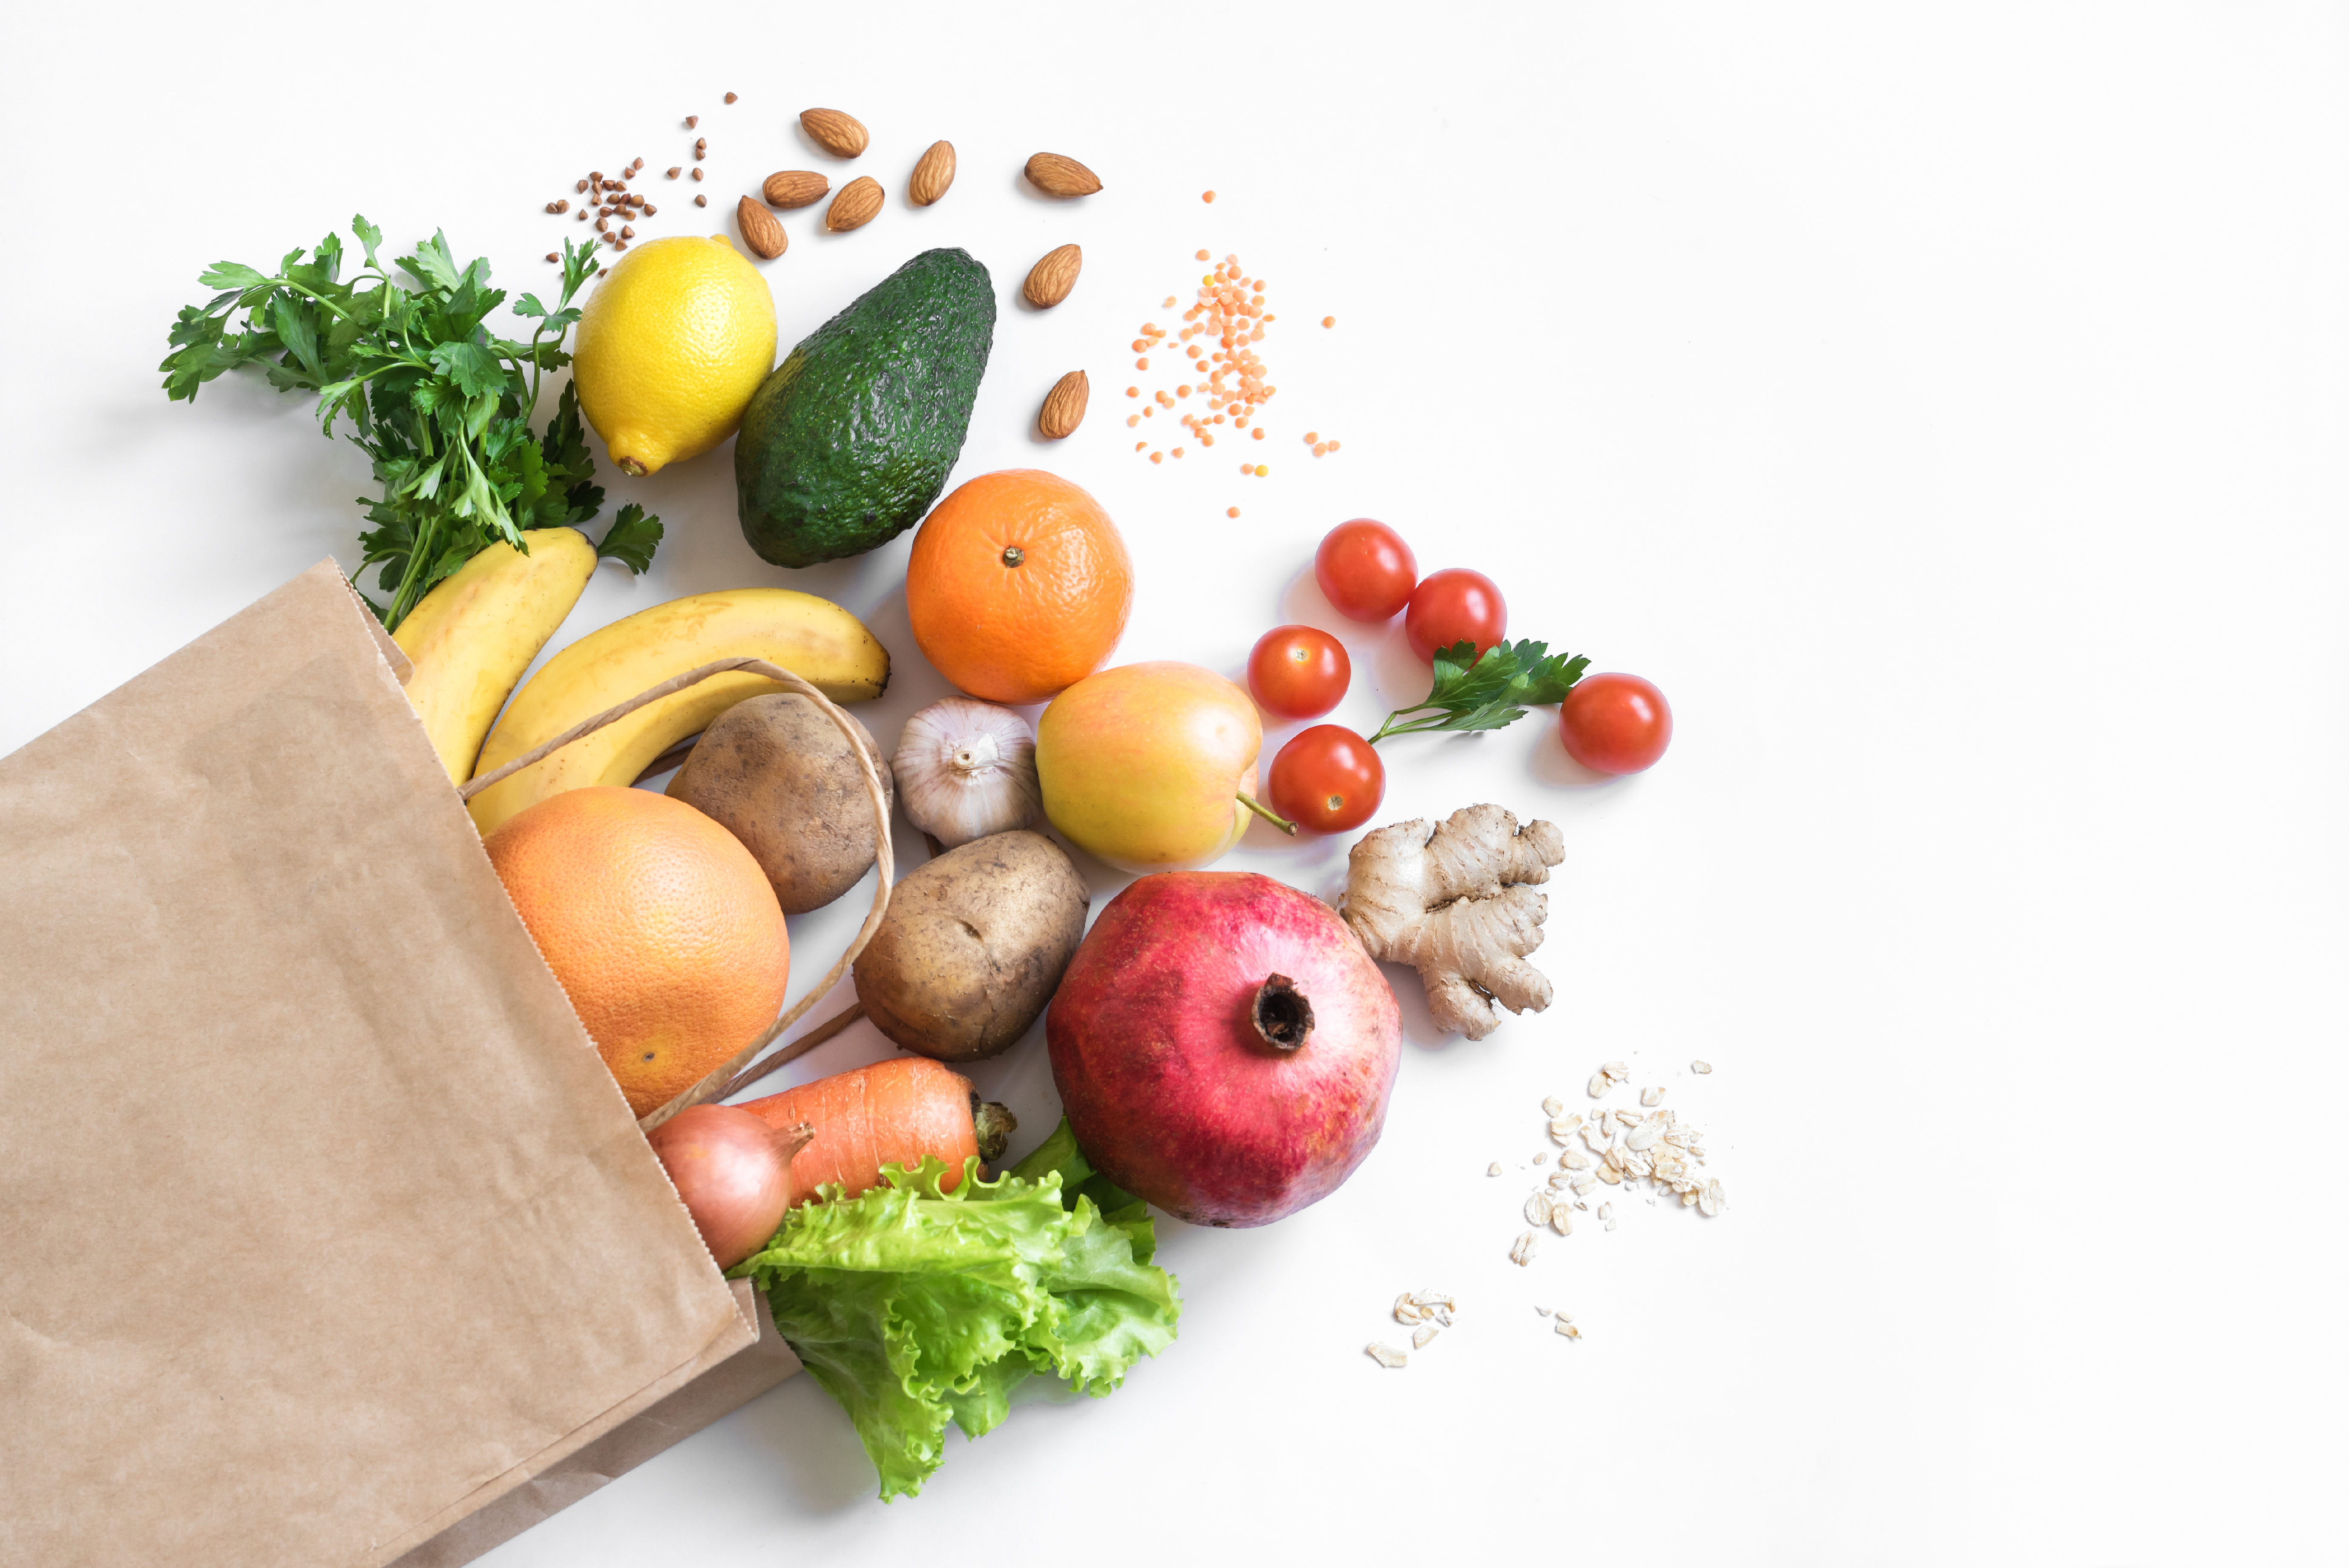 L'aide nutritionnelle permet une baisse significative de l'insécurité alimentaire (Visuel Adobe Stock 315284656)